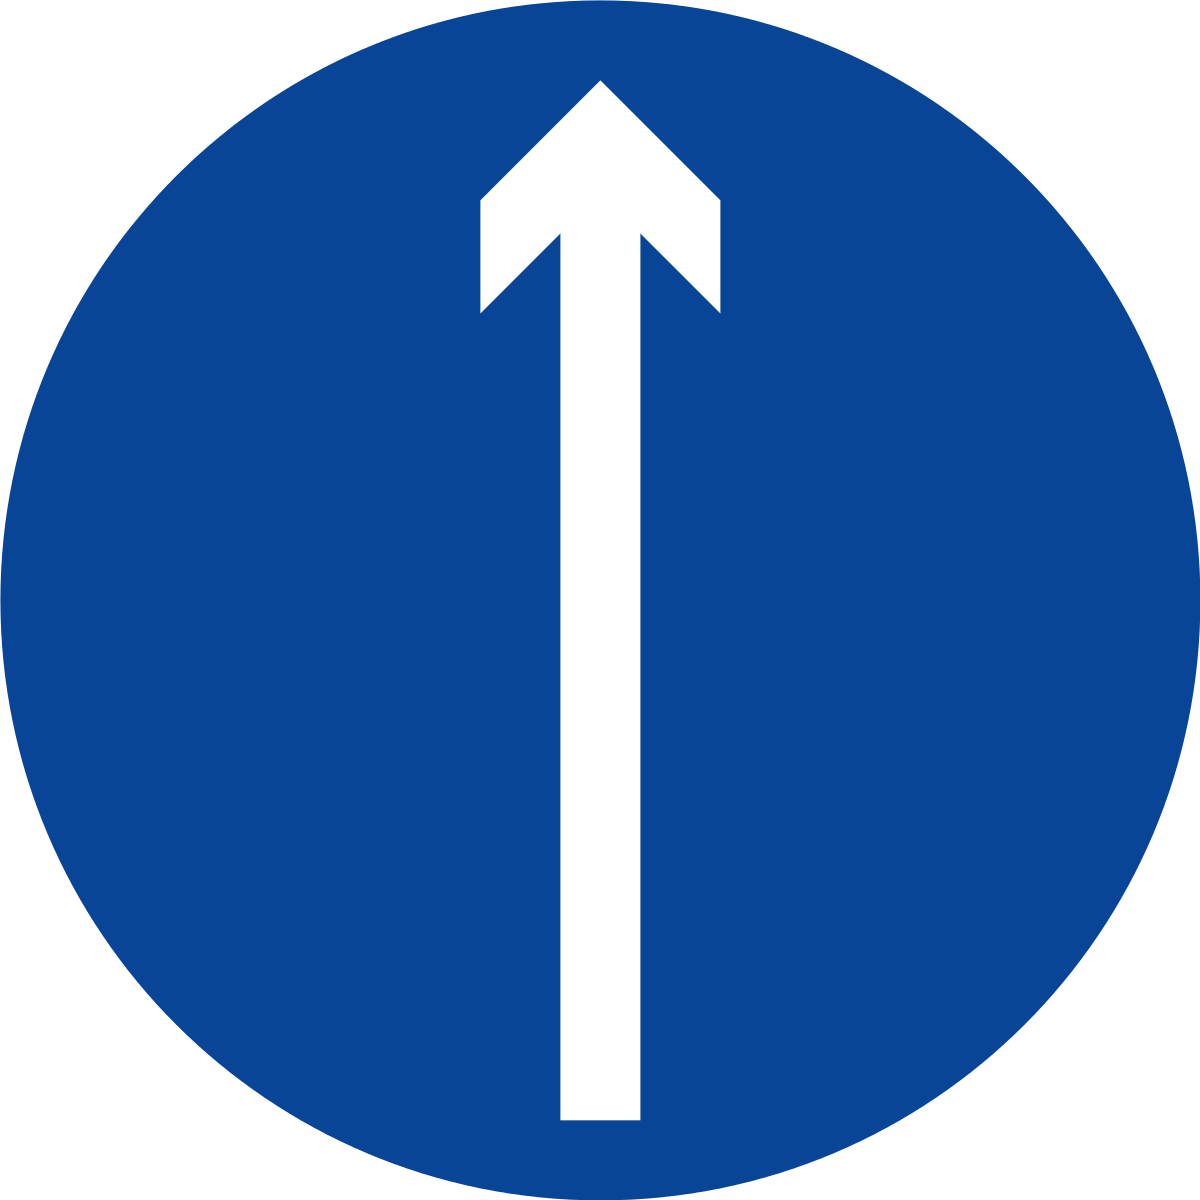 Движение прямо запрещено: Дорожный знак 4.1.1 «Движение прямо»